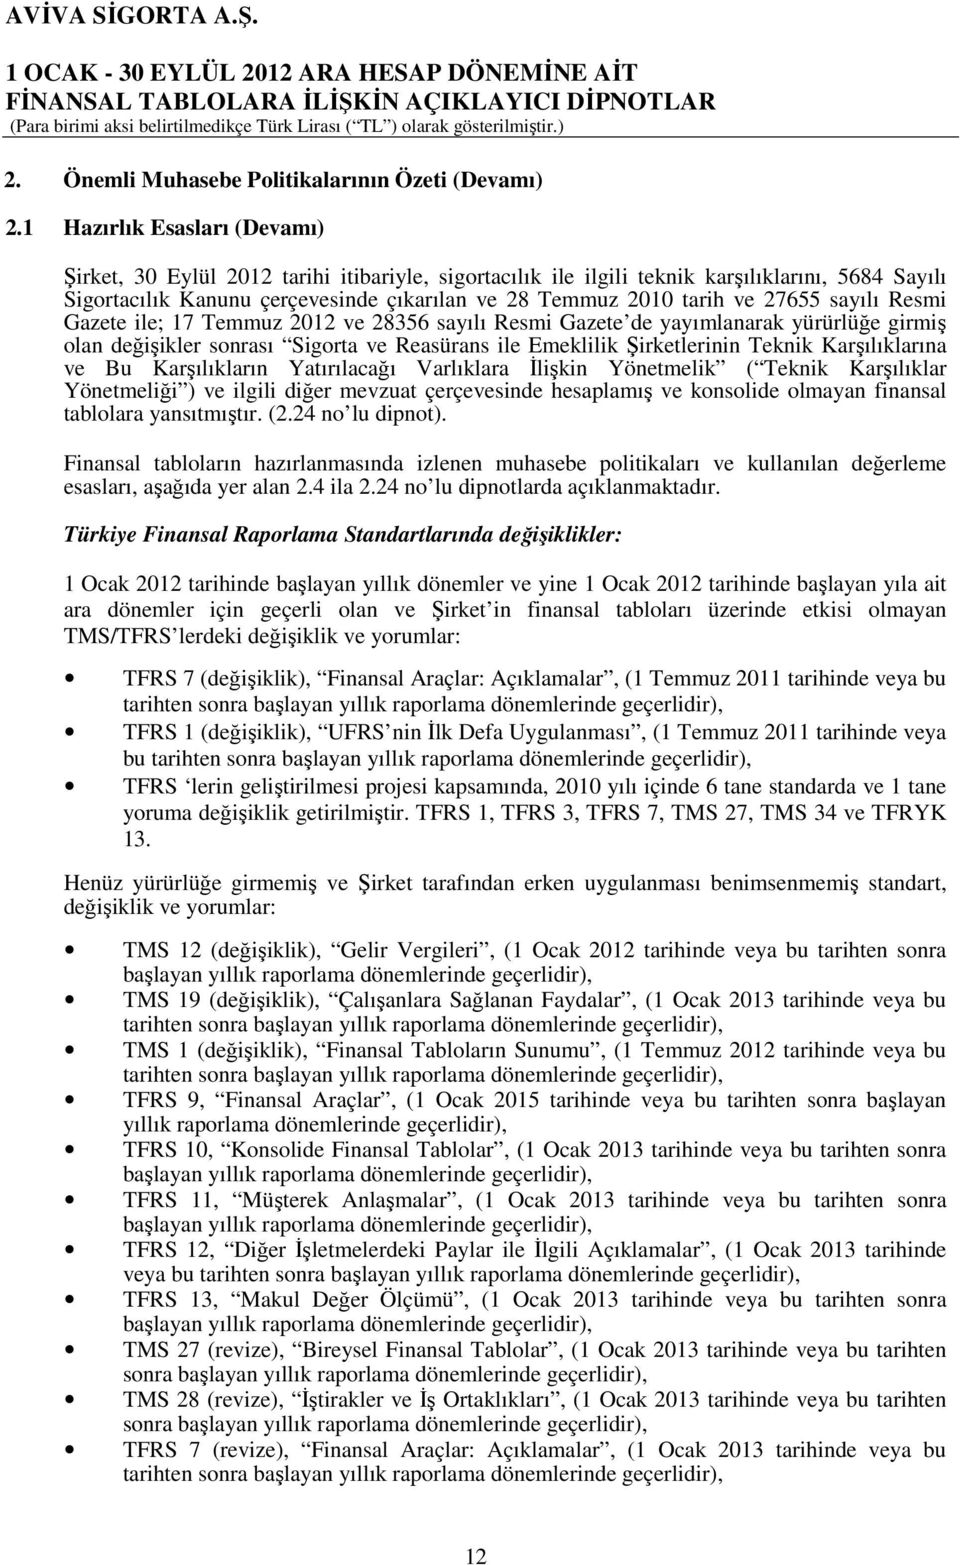 27655 sayılı Resmi Gazete ile; 17 Temmuz 2012 ve 28356 sayılı Resmi Gazete de yayımlanarak yürürlüğe girmiş olan değişikler sonrası Sigorta ve Reasürans ile Emeklilik Şirketlerinin Teknik